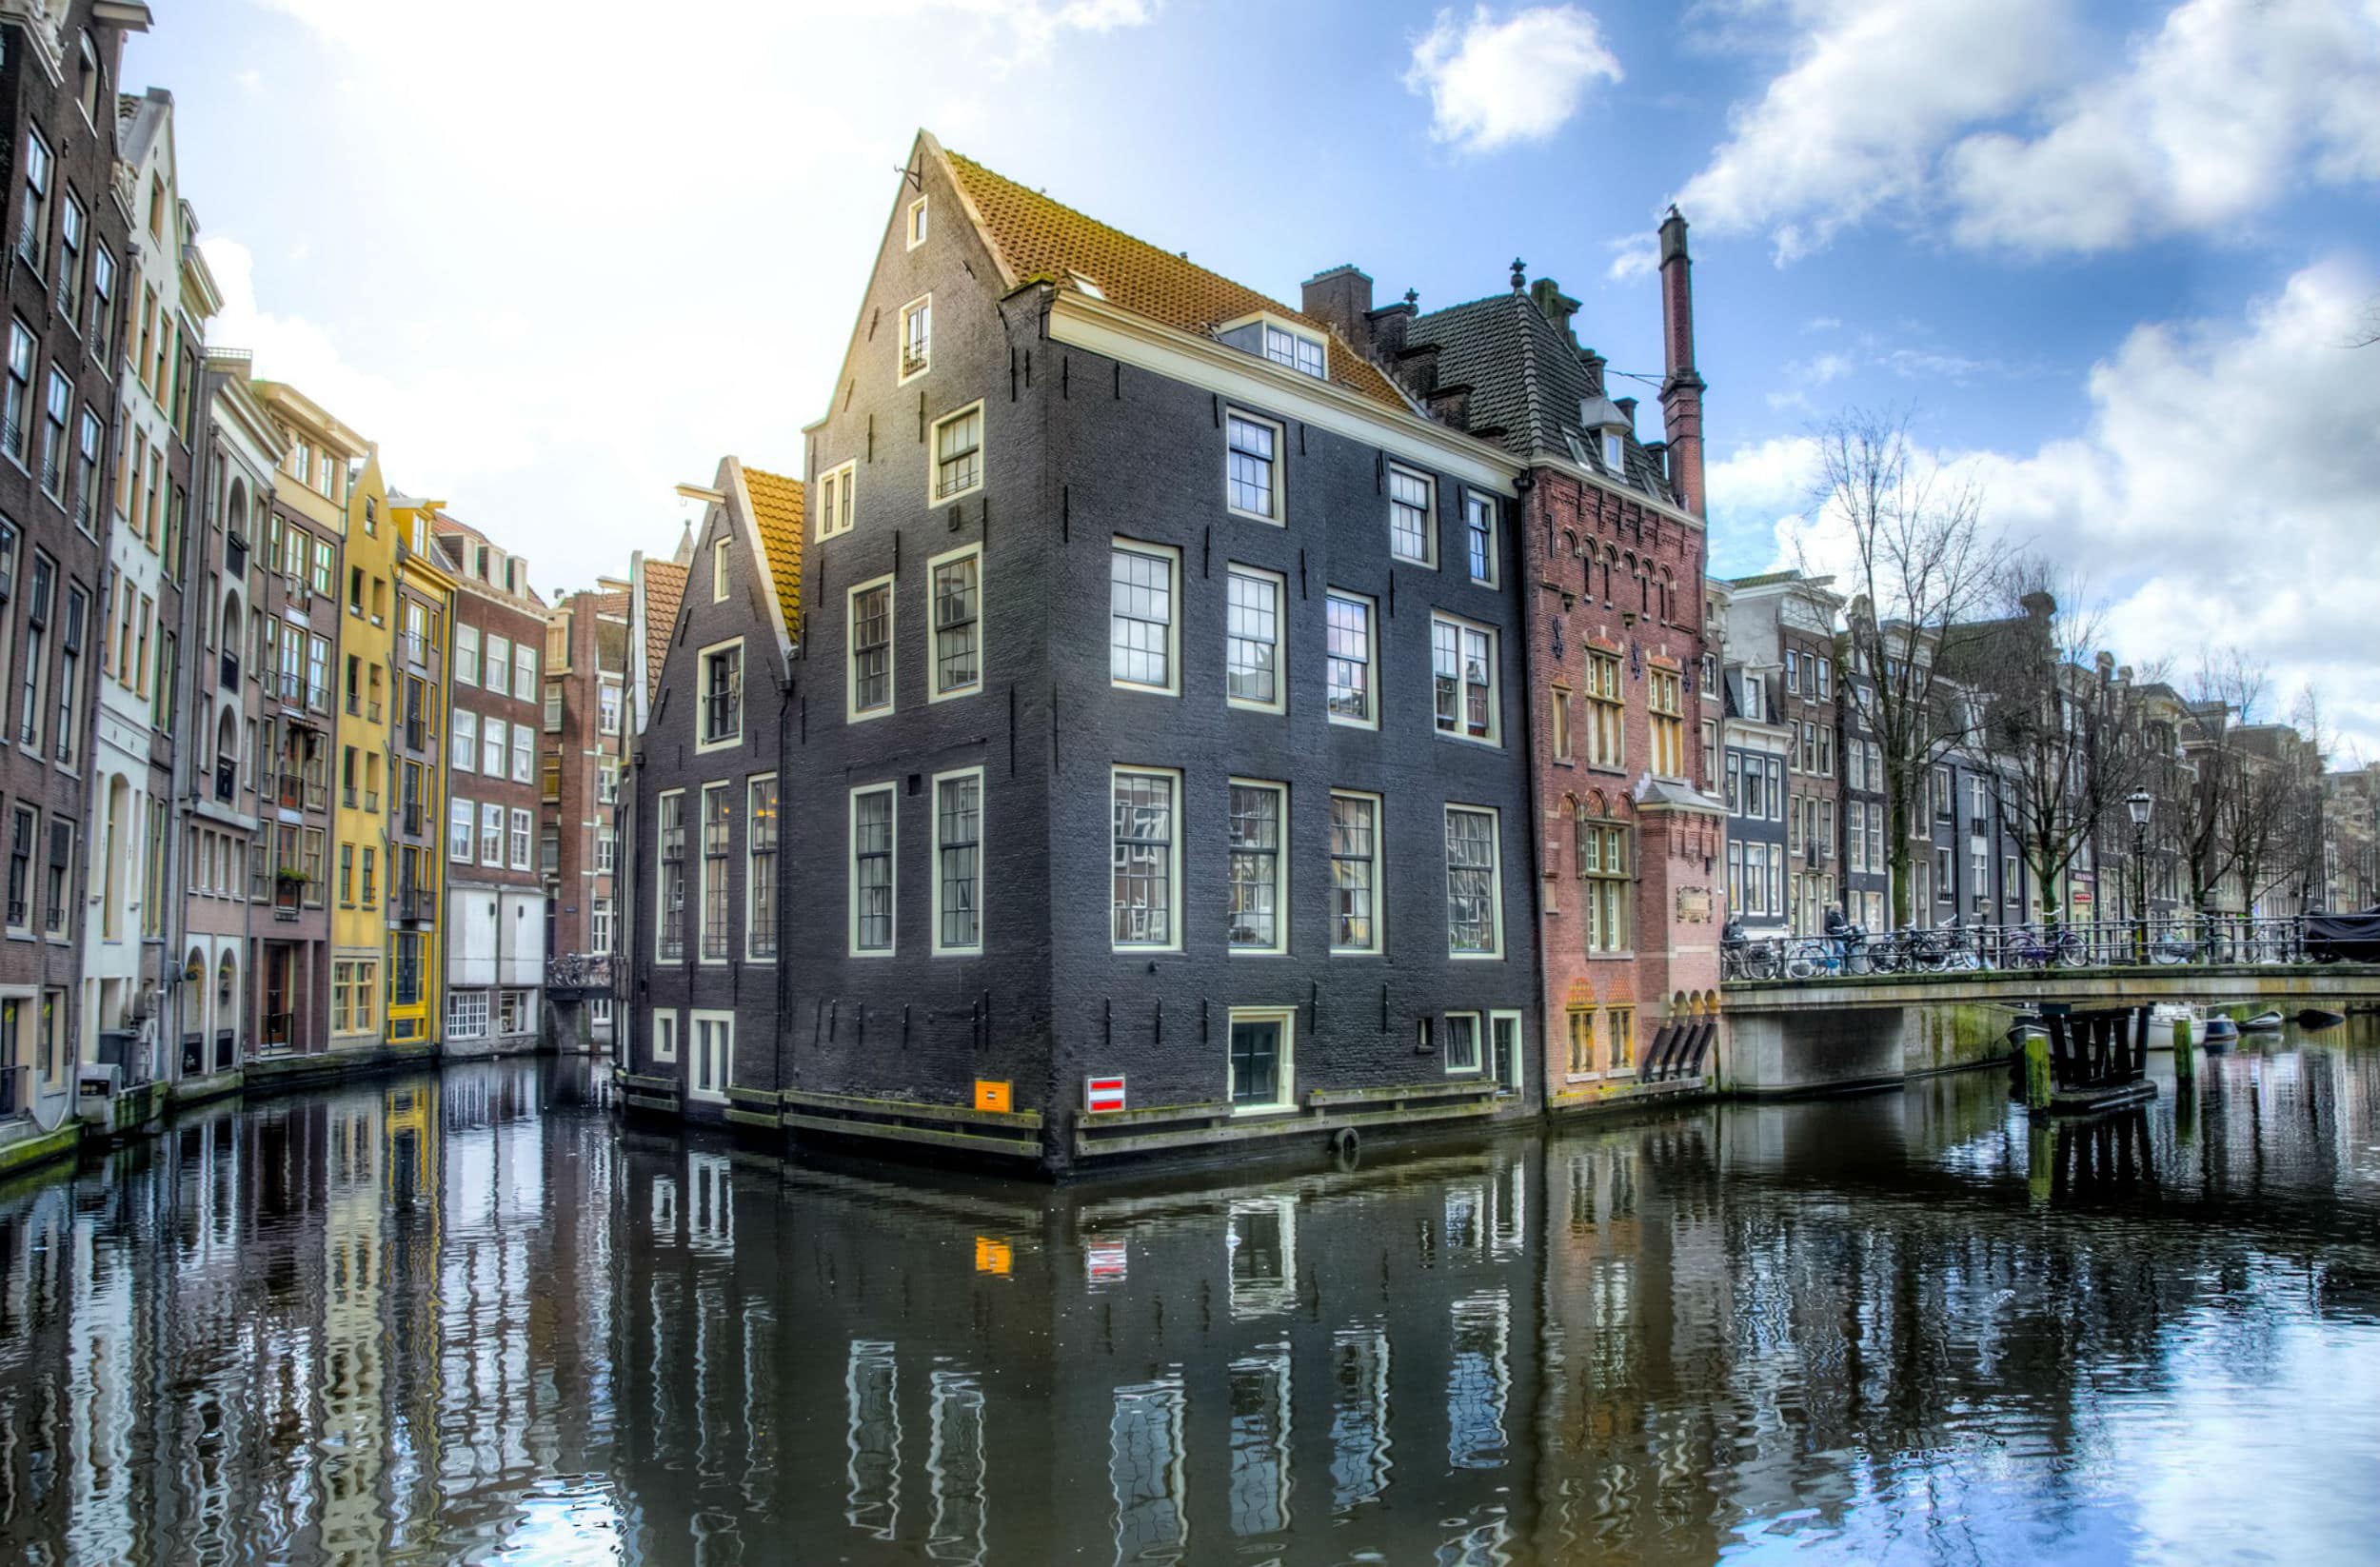 Ferienhaus in Amsterdam, der aufregenden Stadt